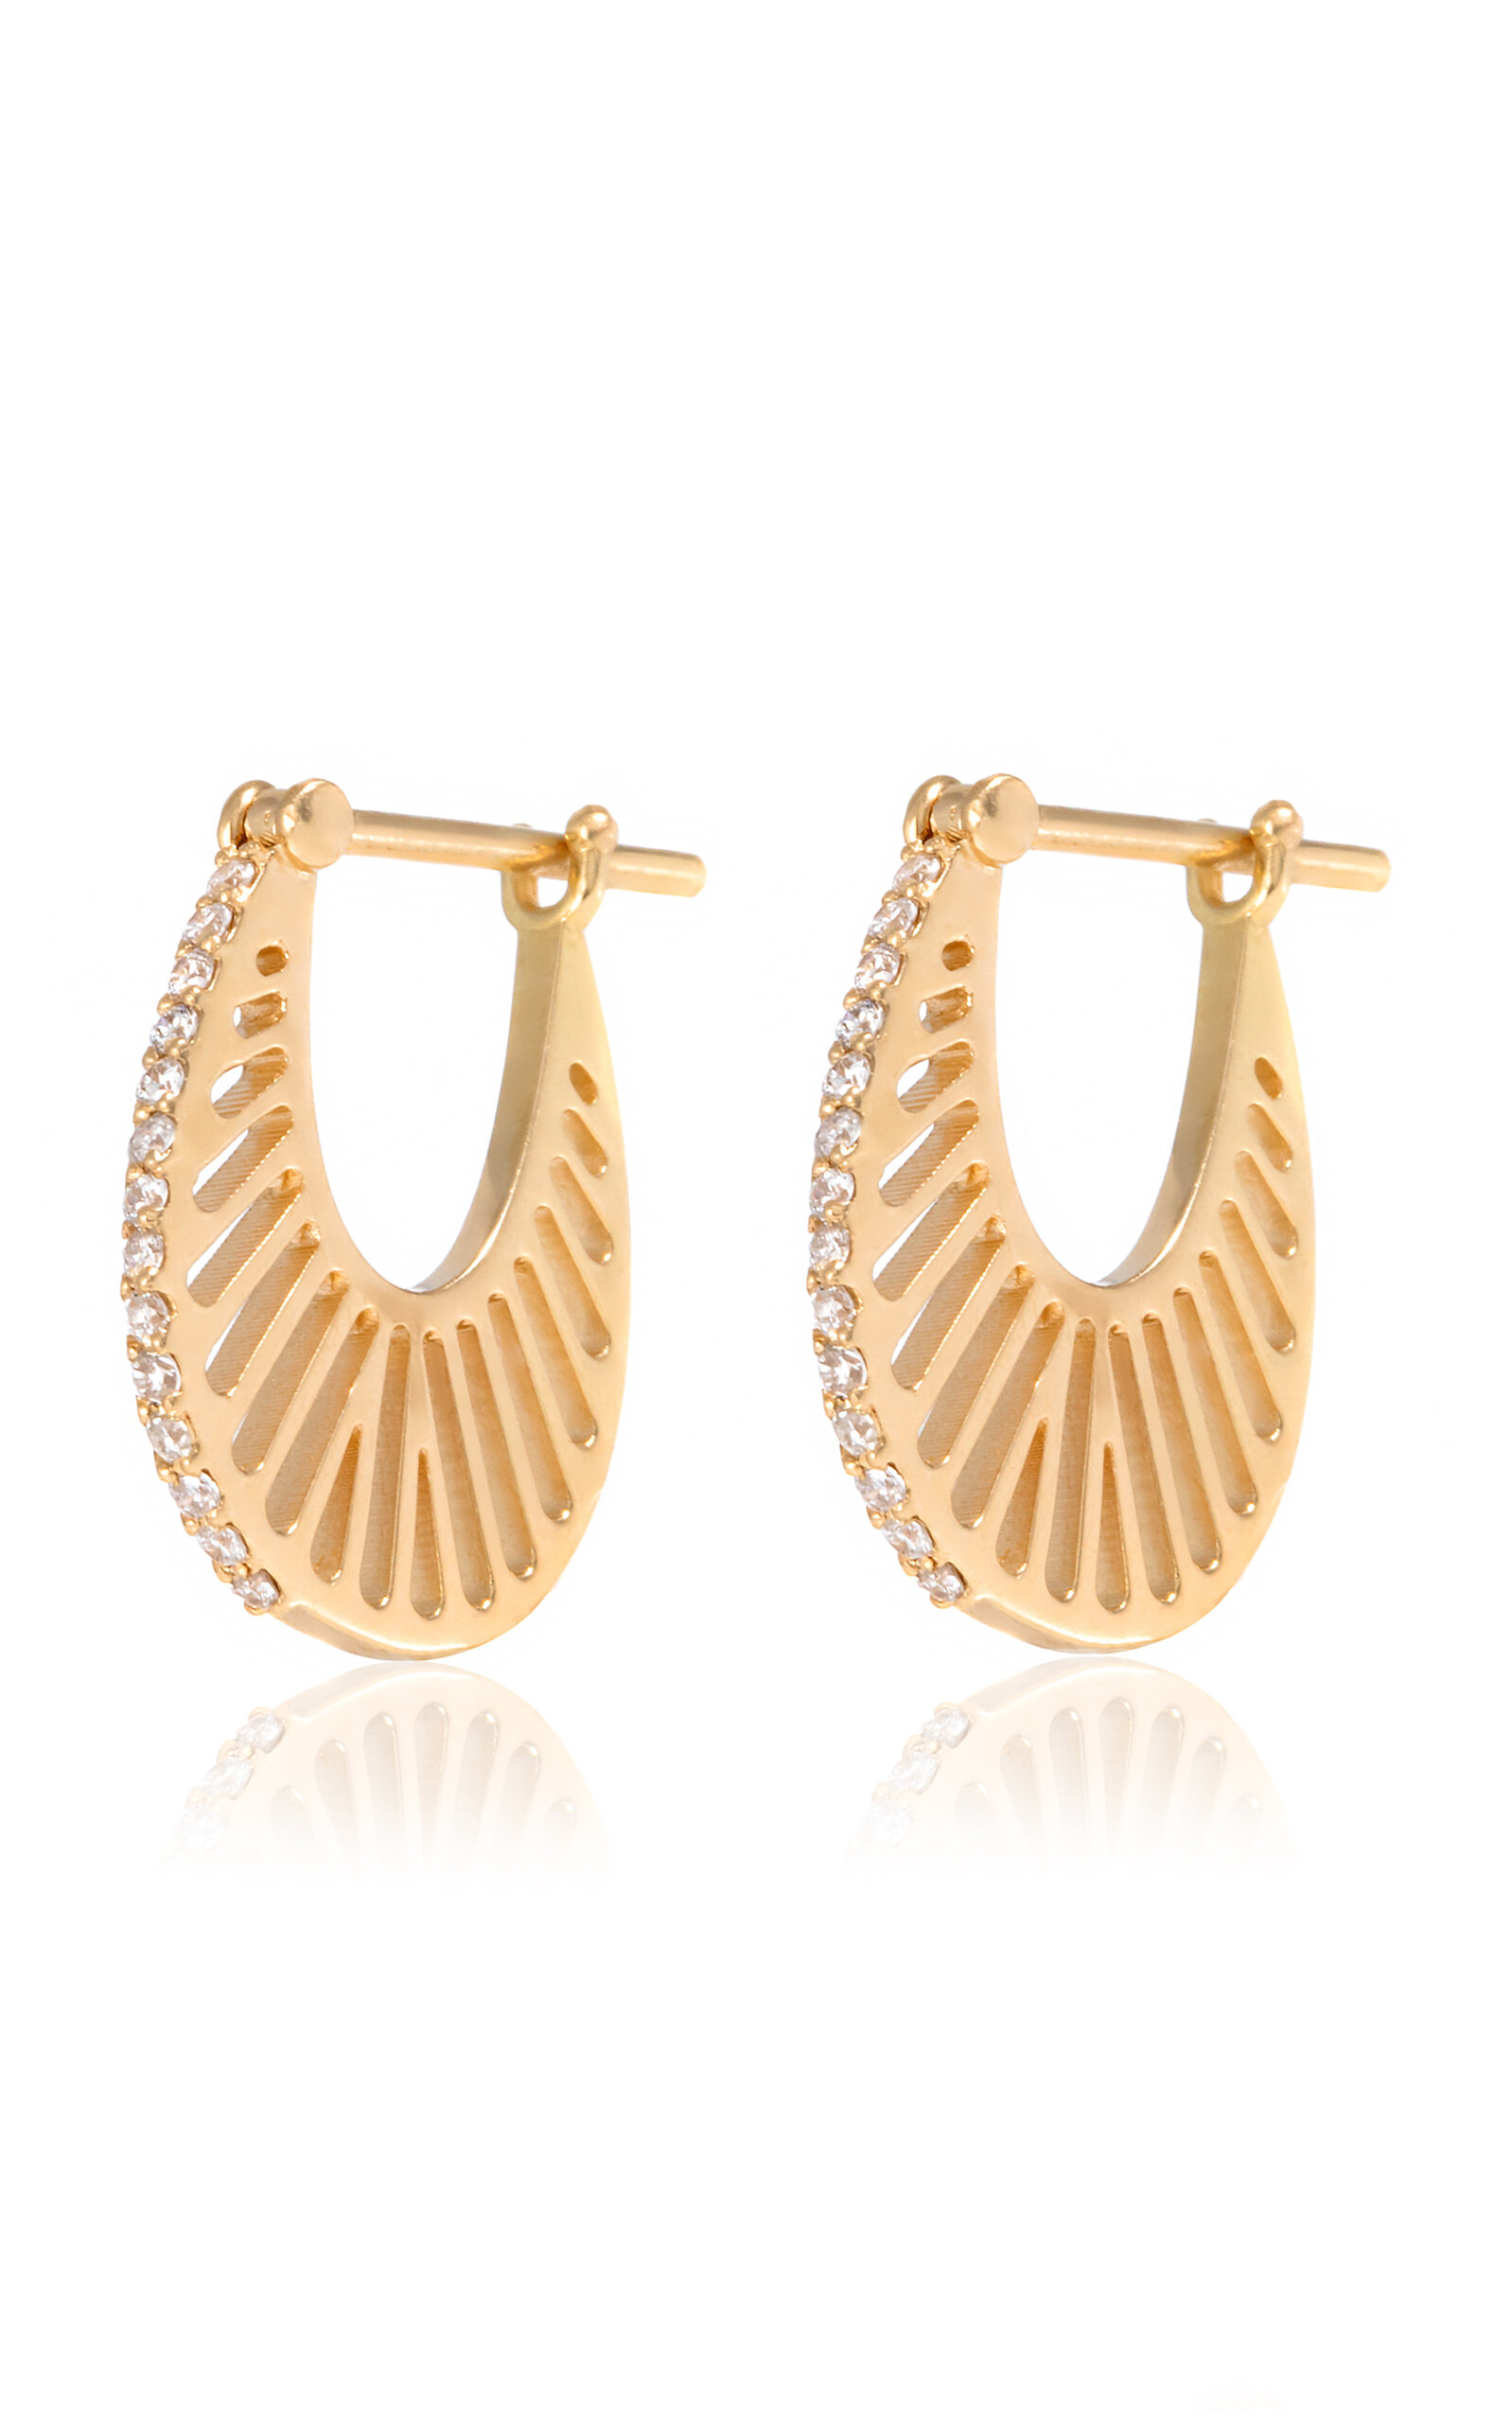 L'atelier Nawbar Medium Ray 18k Yellow Gold Diamond Earrings